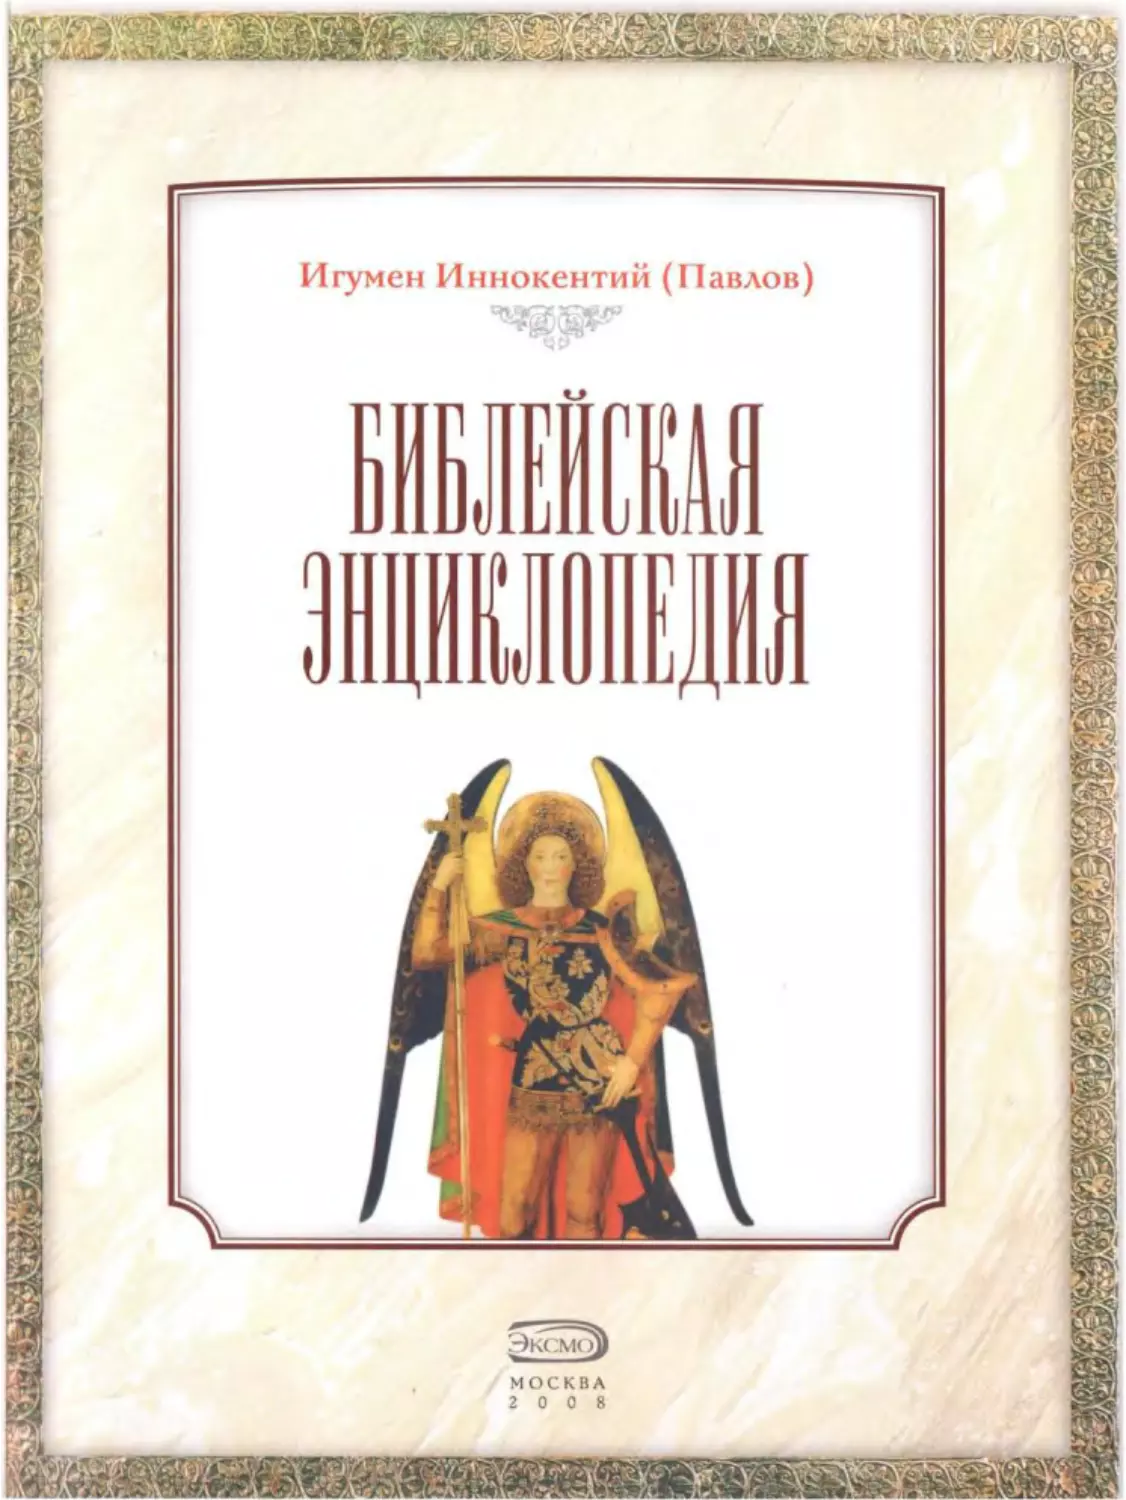 ﻿Игумен Иннокентий øПавловù. Библейская энциклопедия. 200